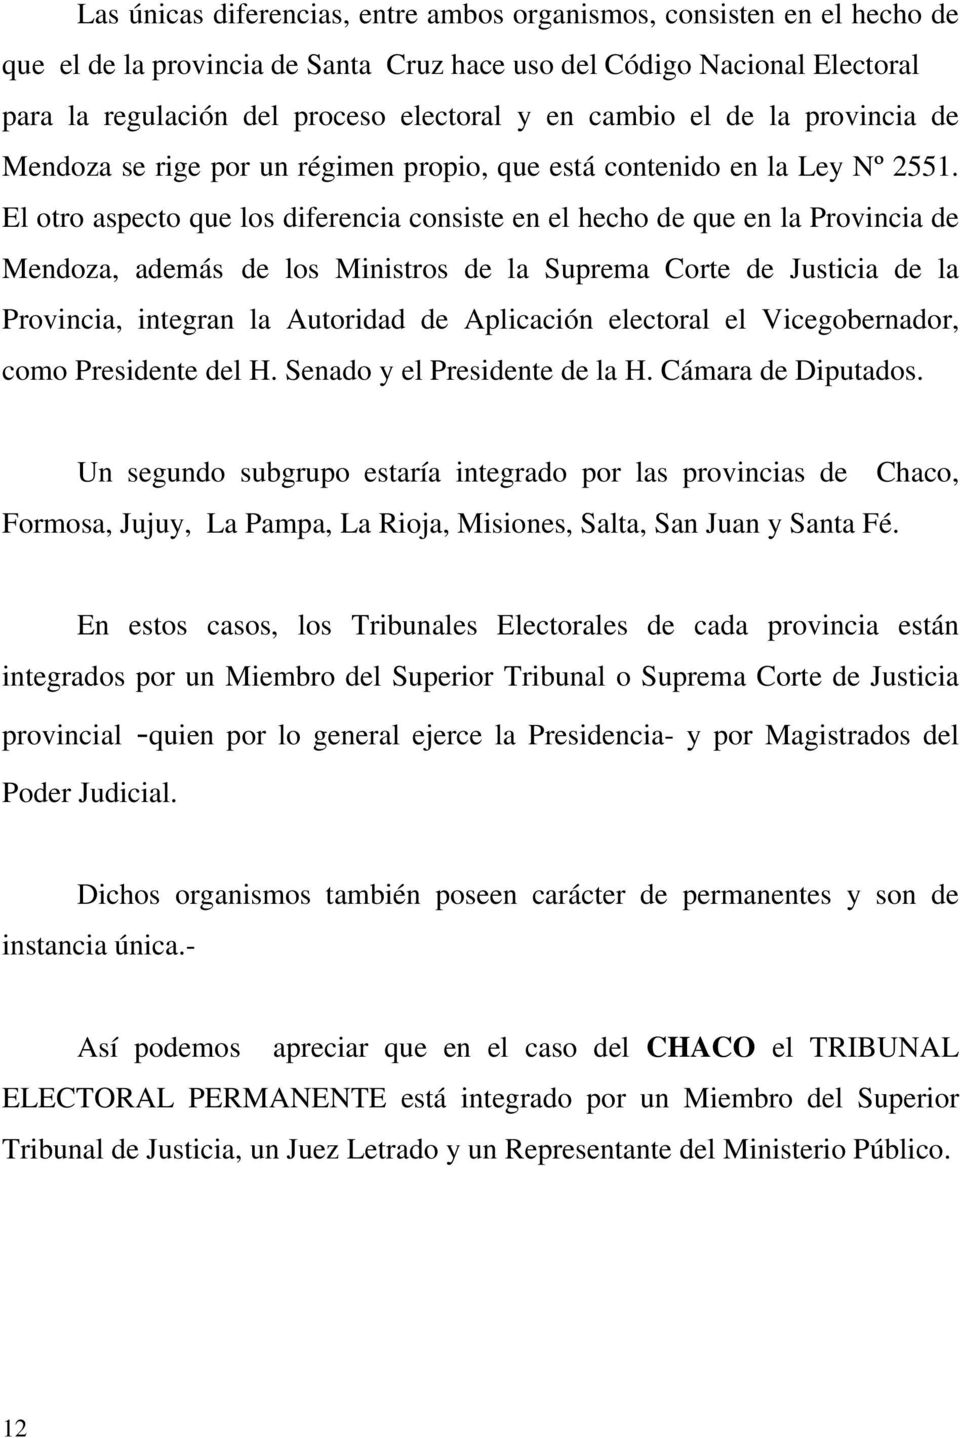 El otro aspecto que los diferencia consiste en el hecho de que en la Provincia de Mendoza, además de los Ministros de la Suprema Corte de Justicia de la Provincia, integran la Autoridad de Aplicación